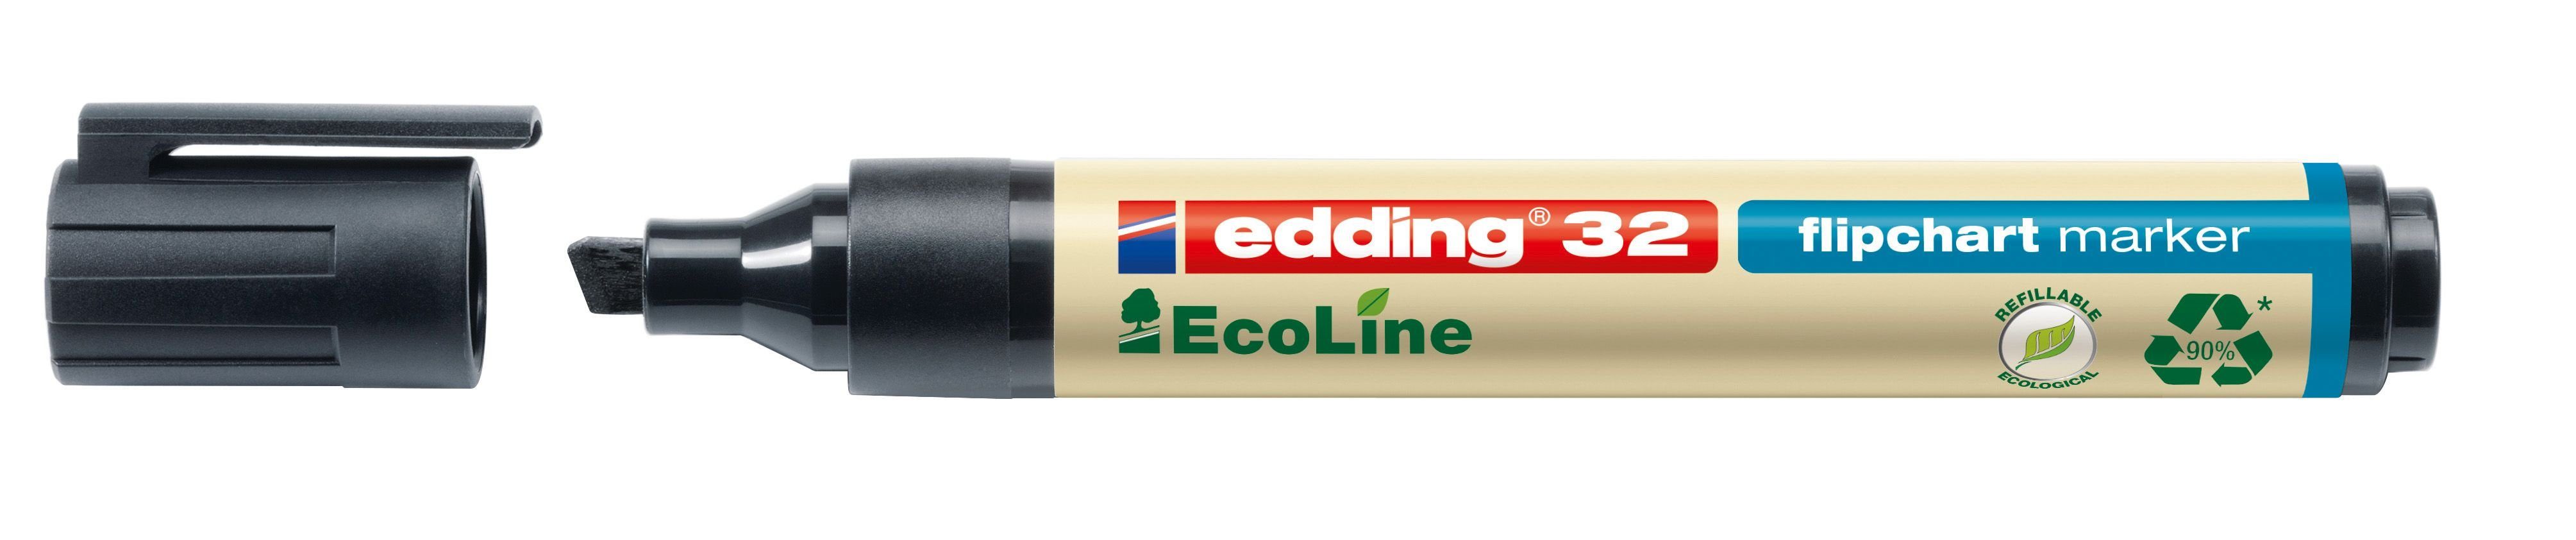 edding Dekokissen 32 Flipchartmarker EcoLine - nachfüllbar, 1 - 5 mm, schwarz